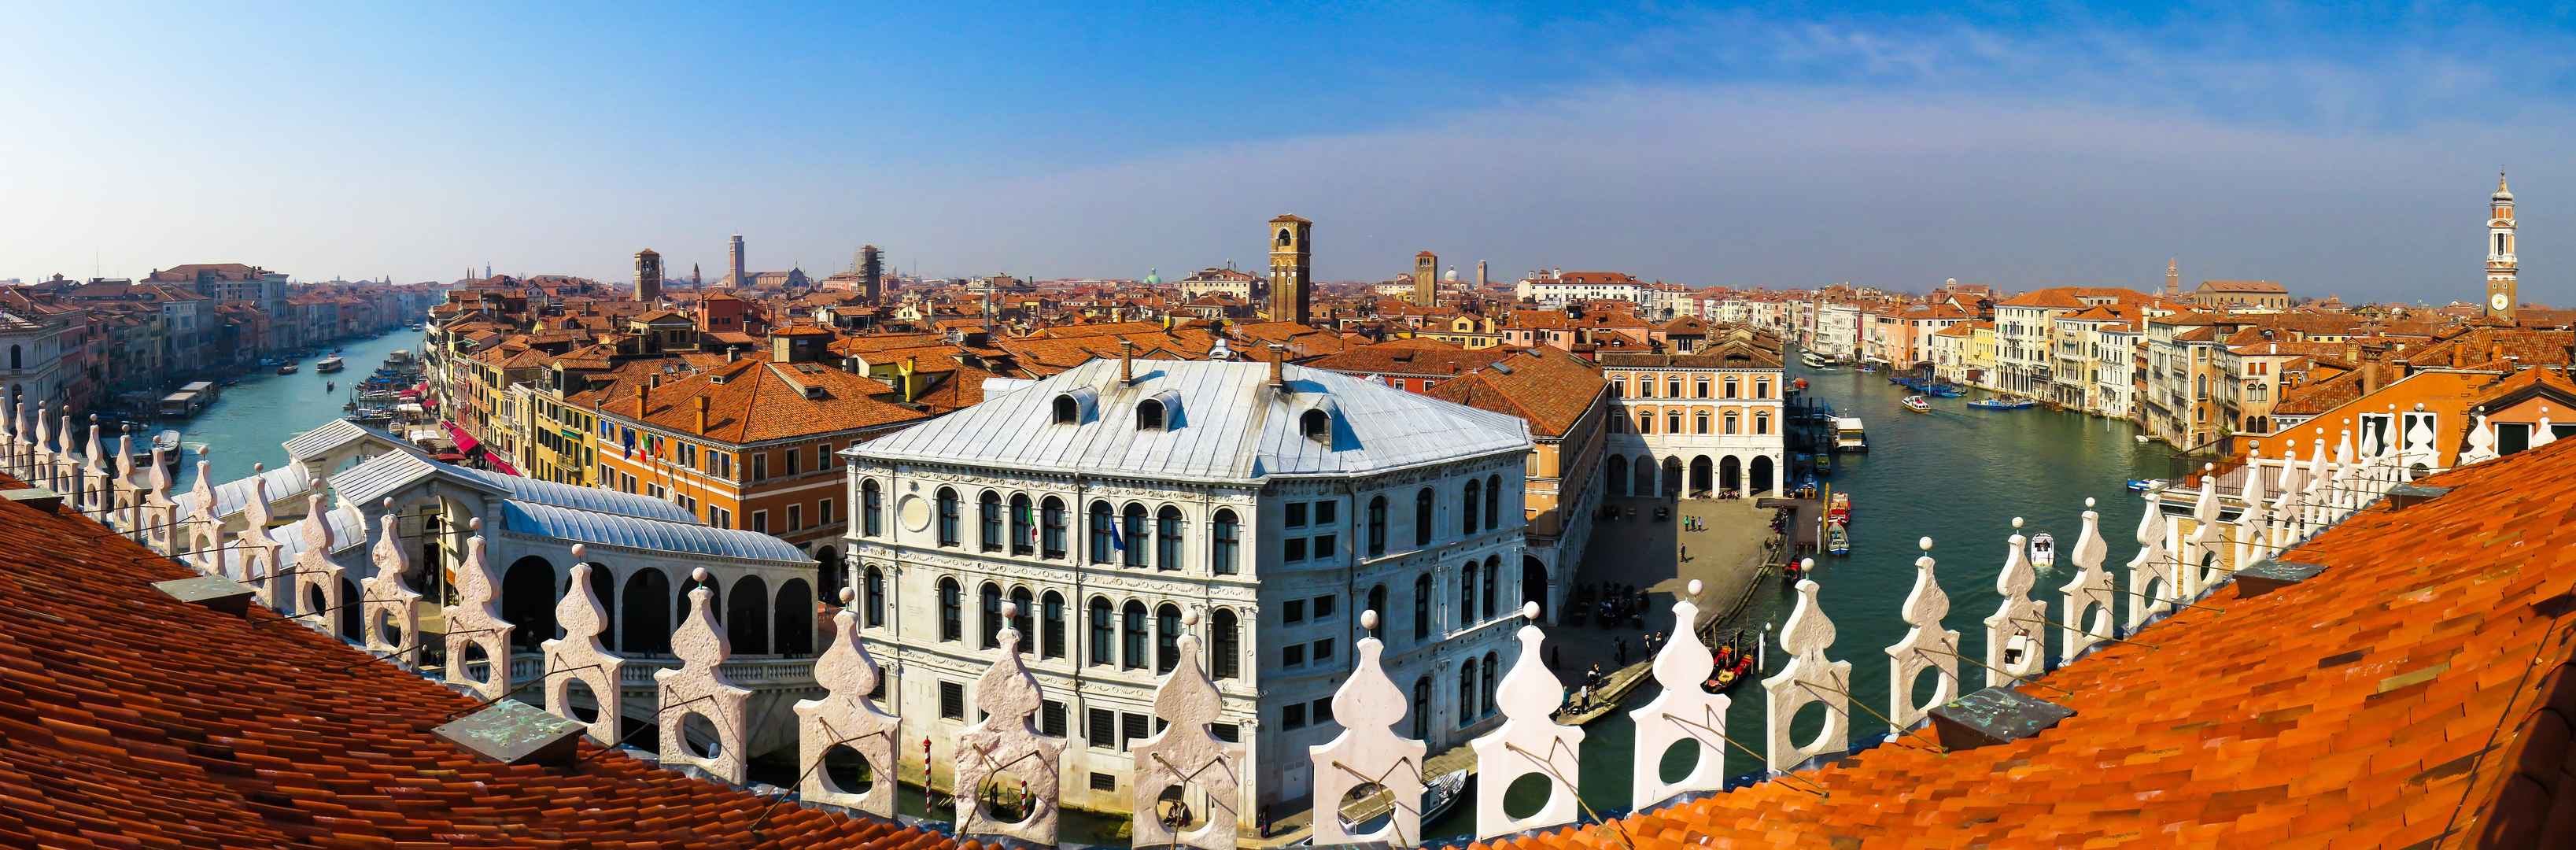 意大利威尼斯建筑风景图片